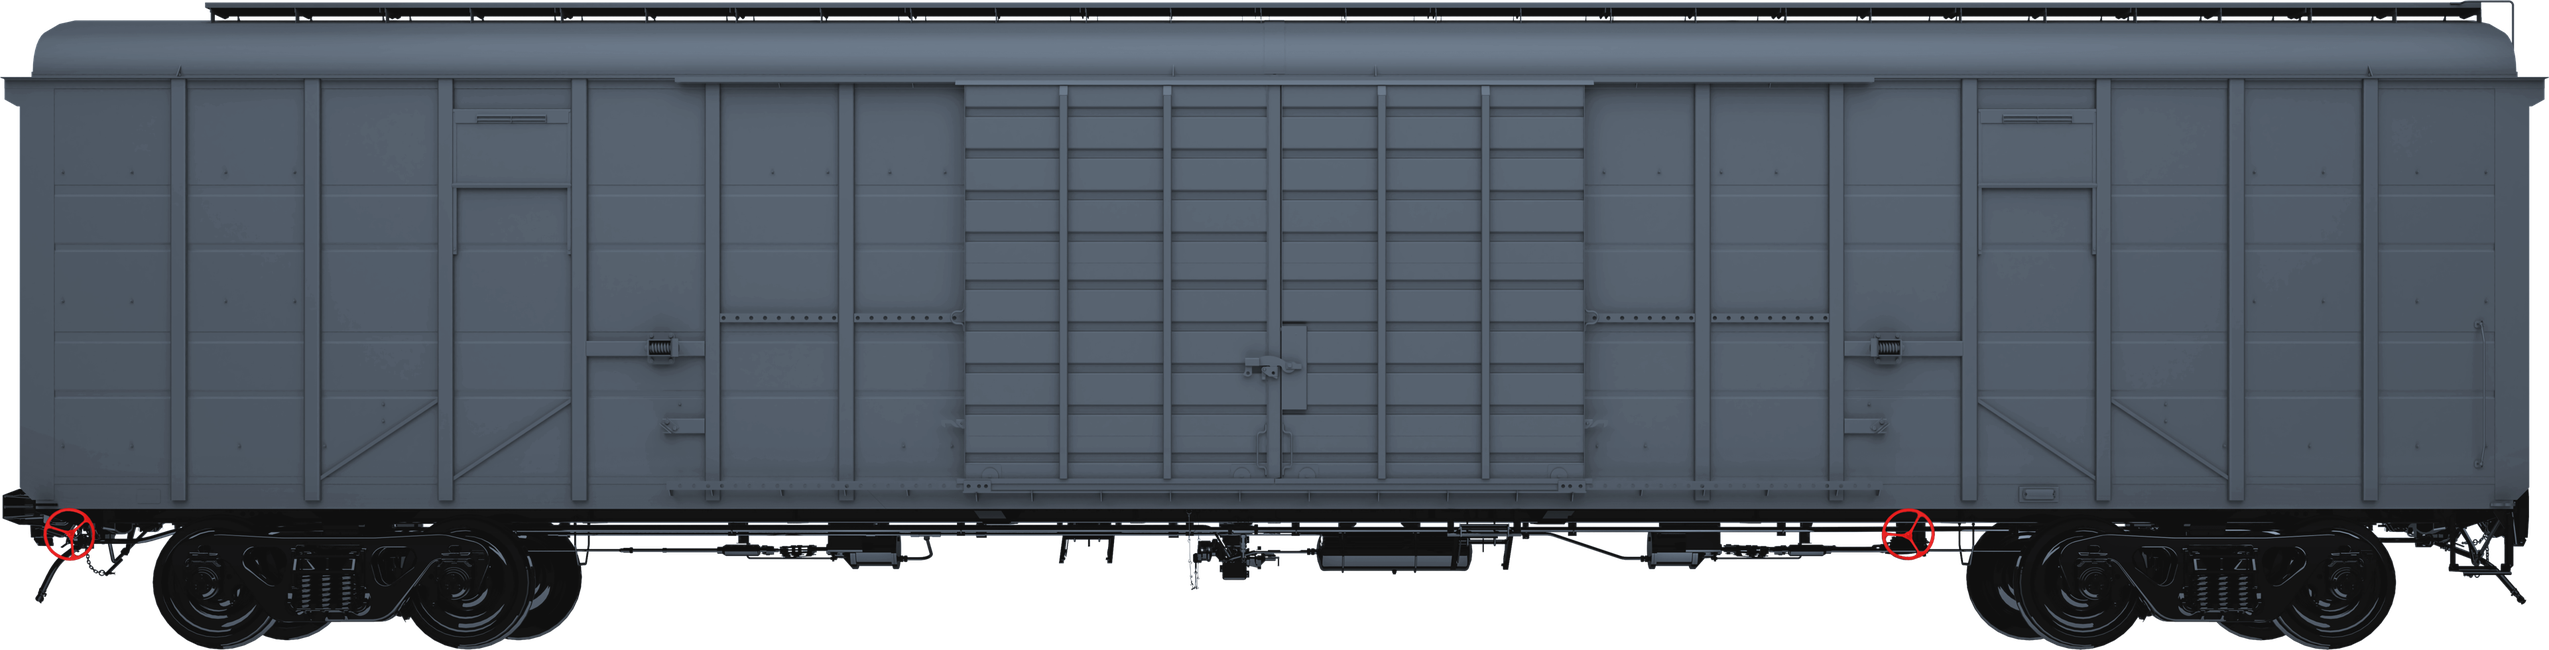 Инновационный крытый вагон модели 11-6874